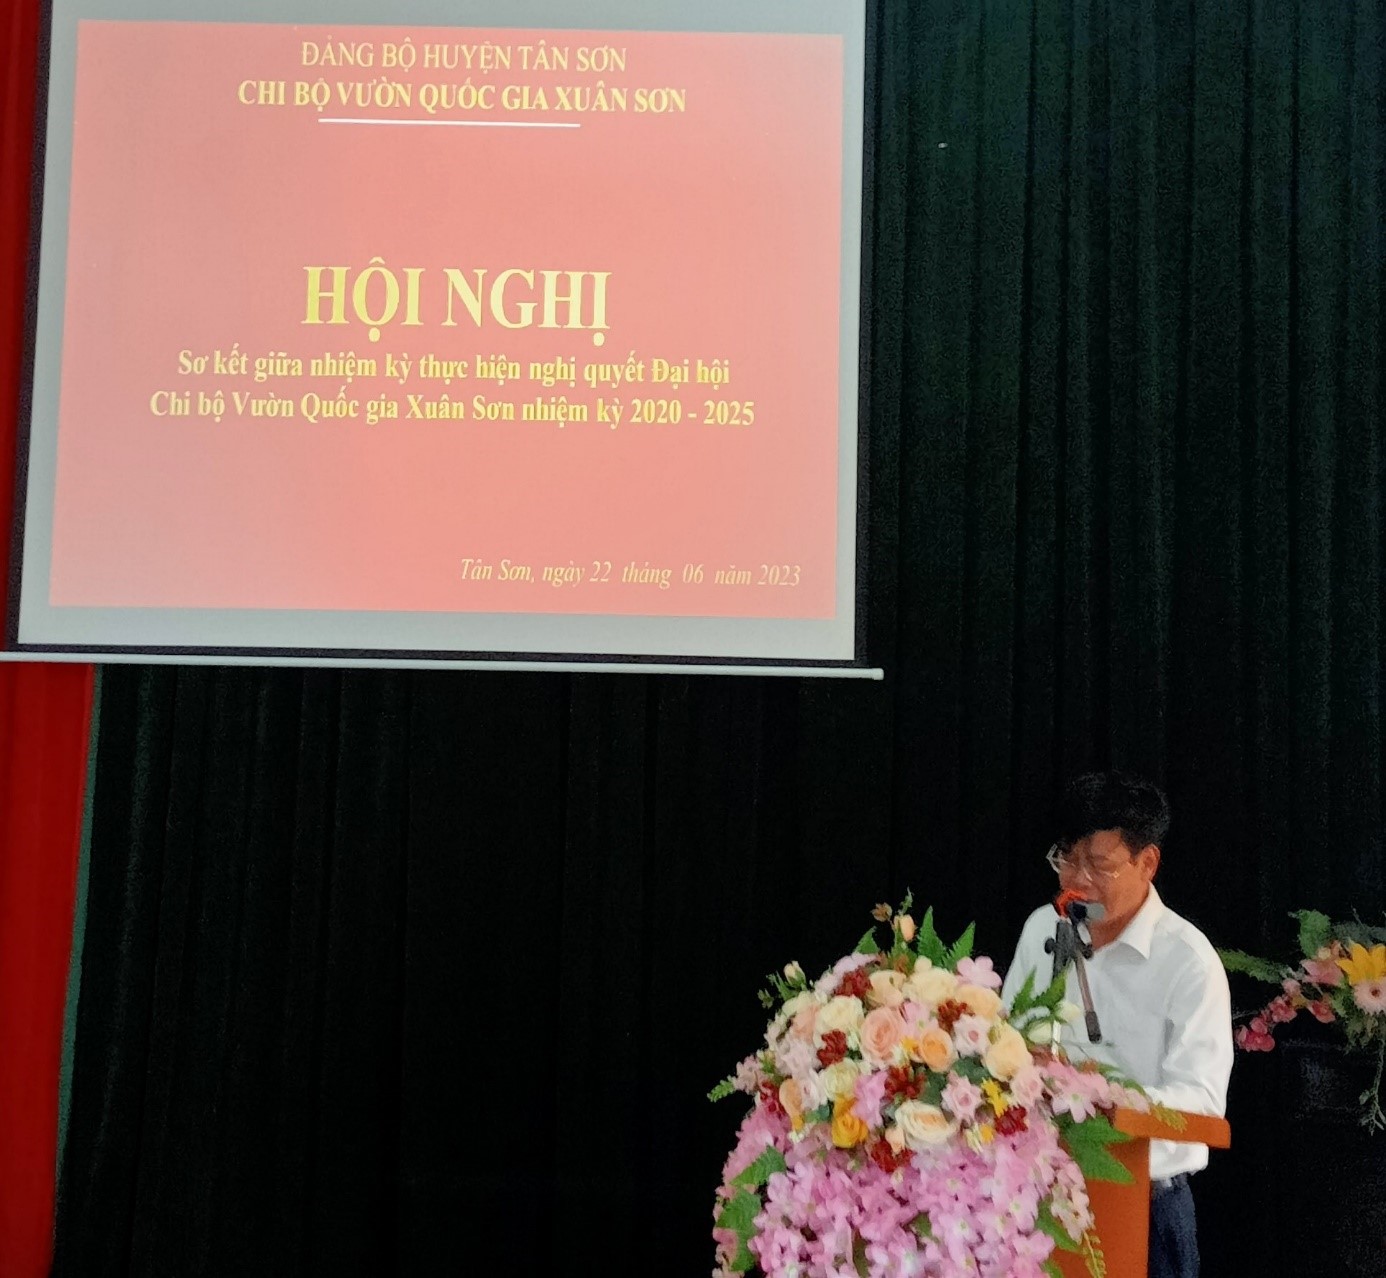 Chi bộ Vườn quốc gia Xuân Sơn tổ chức Hội nghị sơ kết giữa nhiệm kỳ thực hiện nghị quyết Đại hội Chi bộ nhiệm kỳ 2020-2025